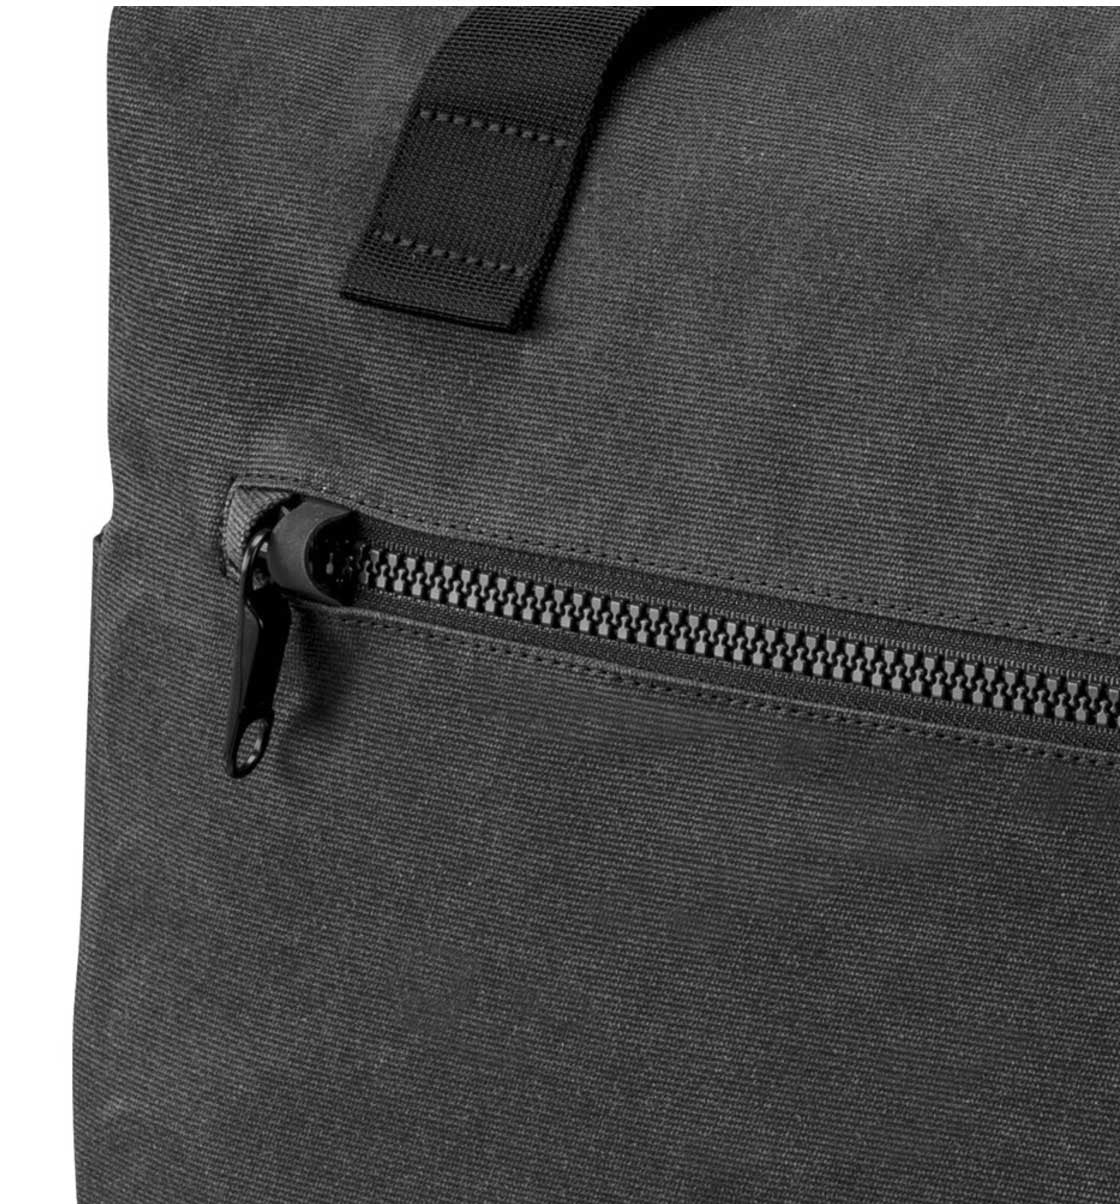 Pacsafe Intasafe Z100 anti-theft iPad satchel